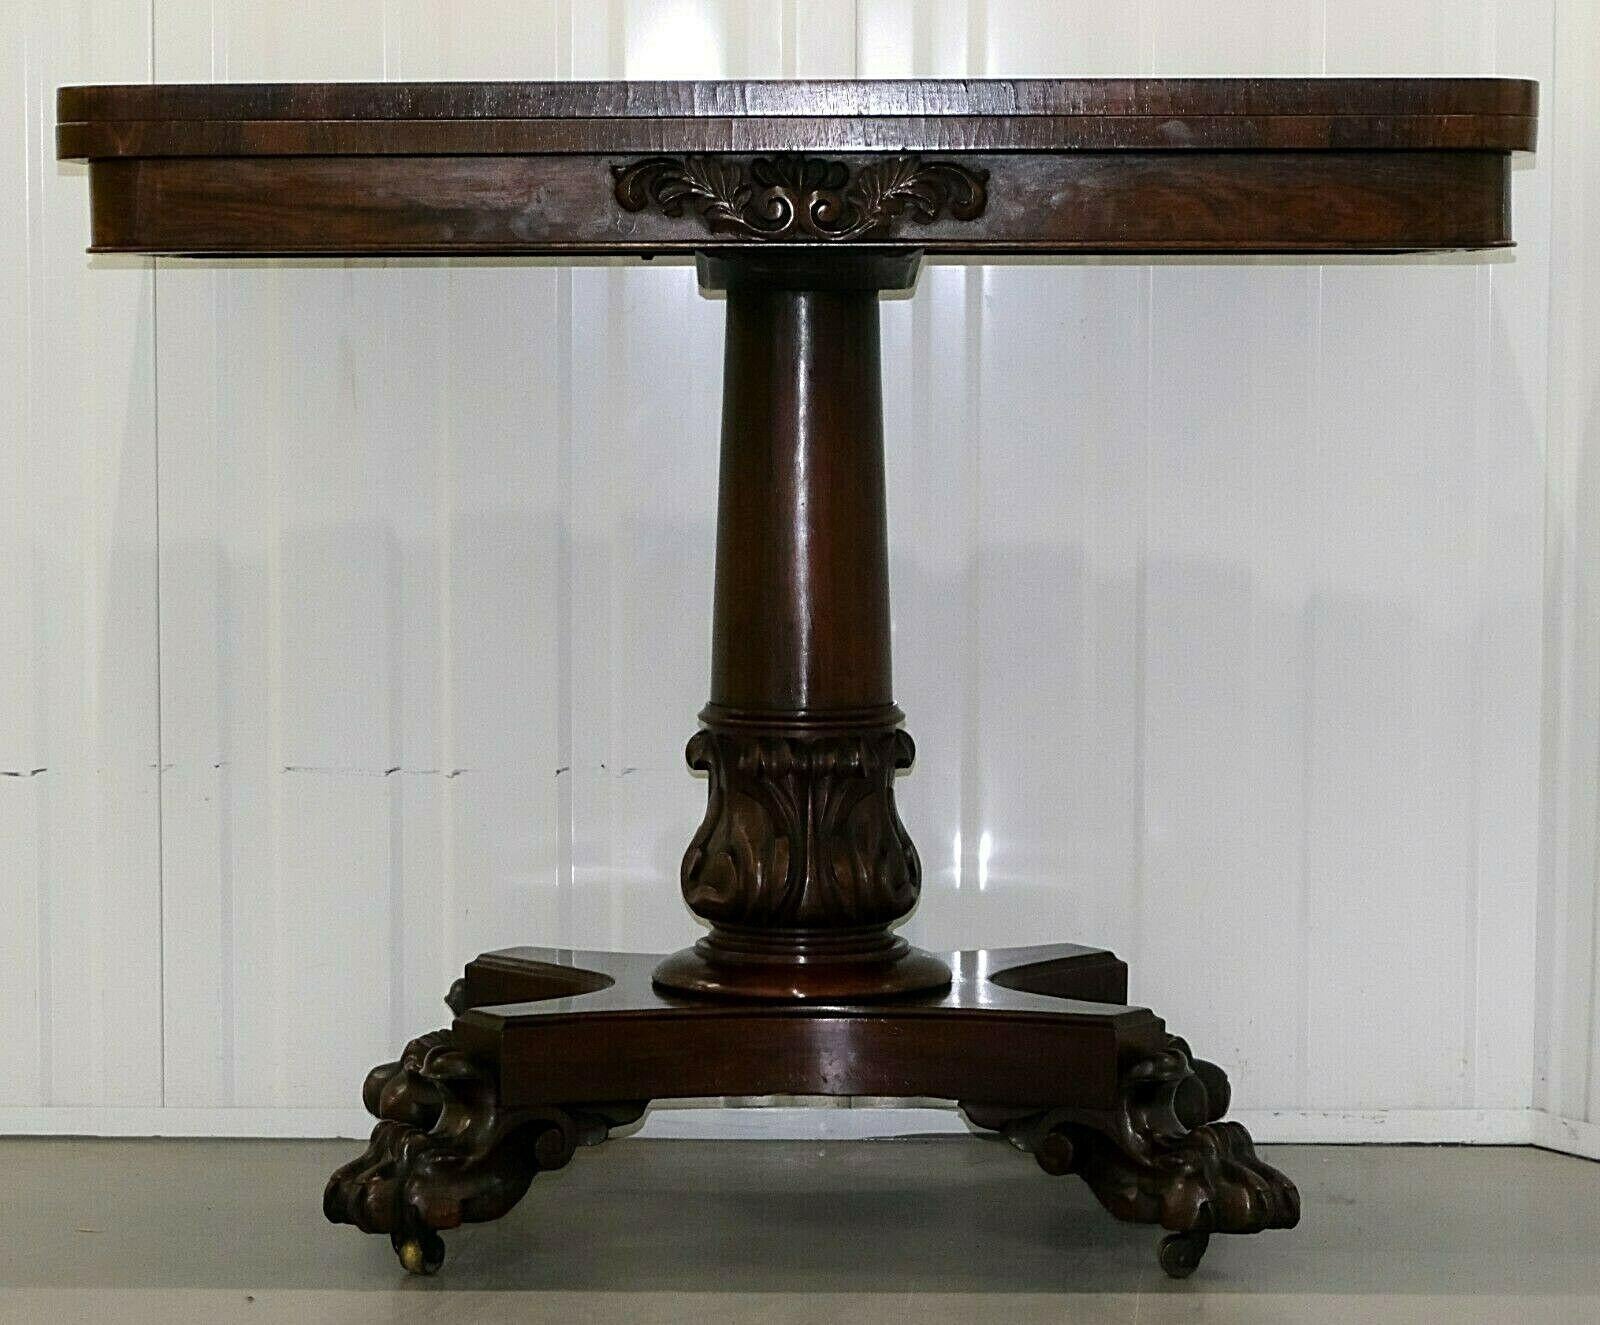 Wir freuen uns, diesen wunderschönen Regency-Kartentisch aus Hartholz aus dem 19. Jahrhundert zum Verkauf anbieten zu können.

Drehen und heben Sie den Deckel an, um eine blau ausgekleidete runde Oberfläche freizulegen. Der Tisch steht auf schönen